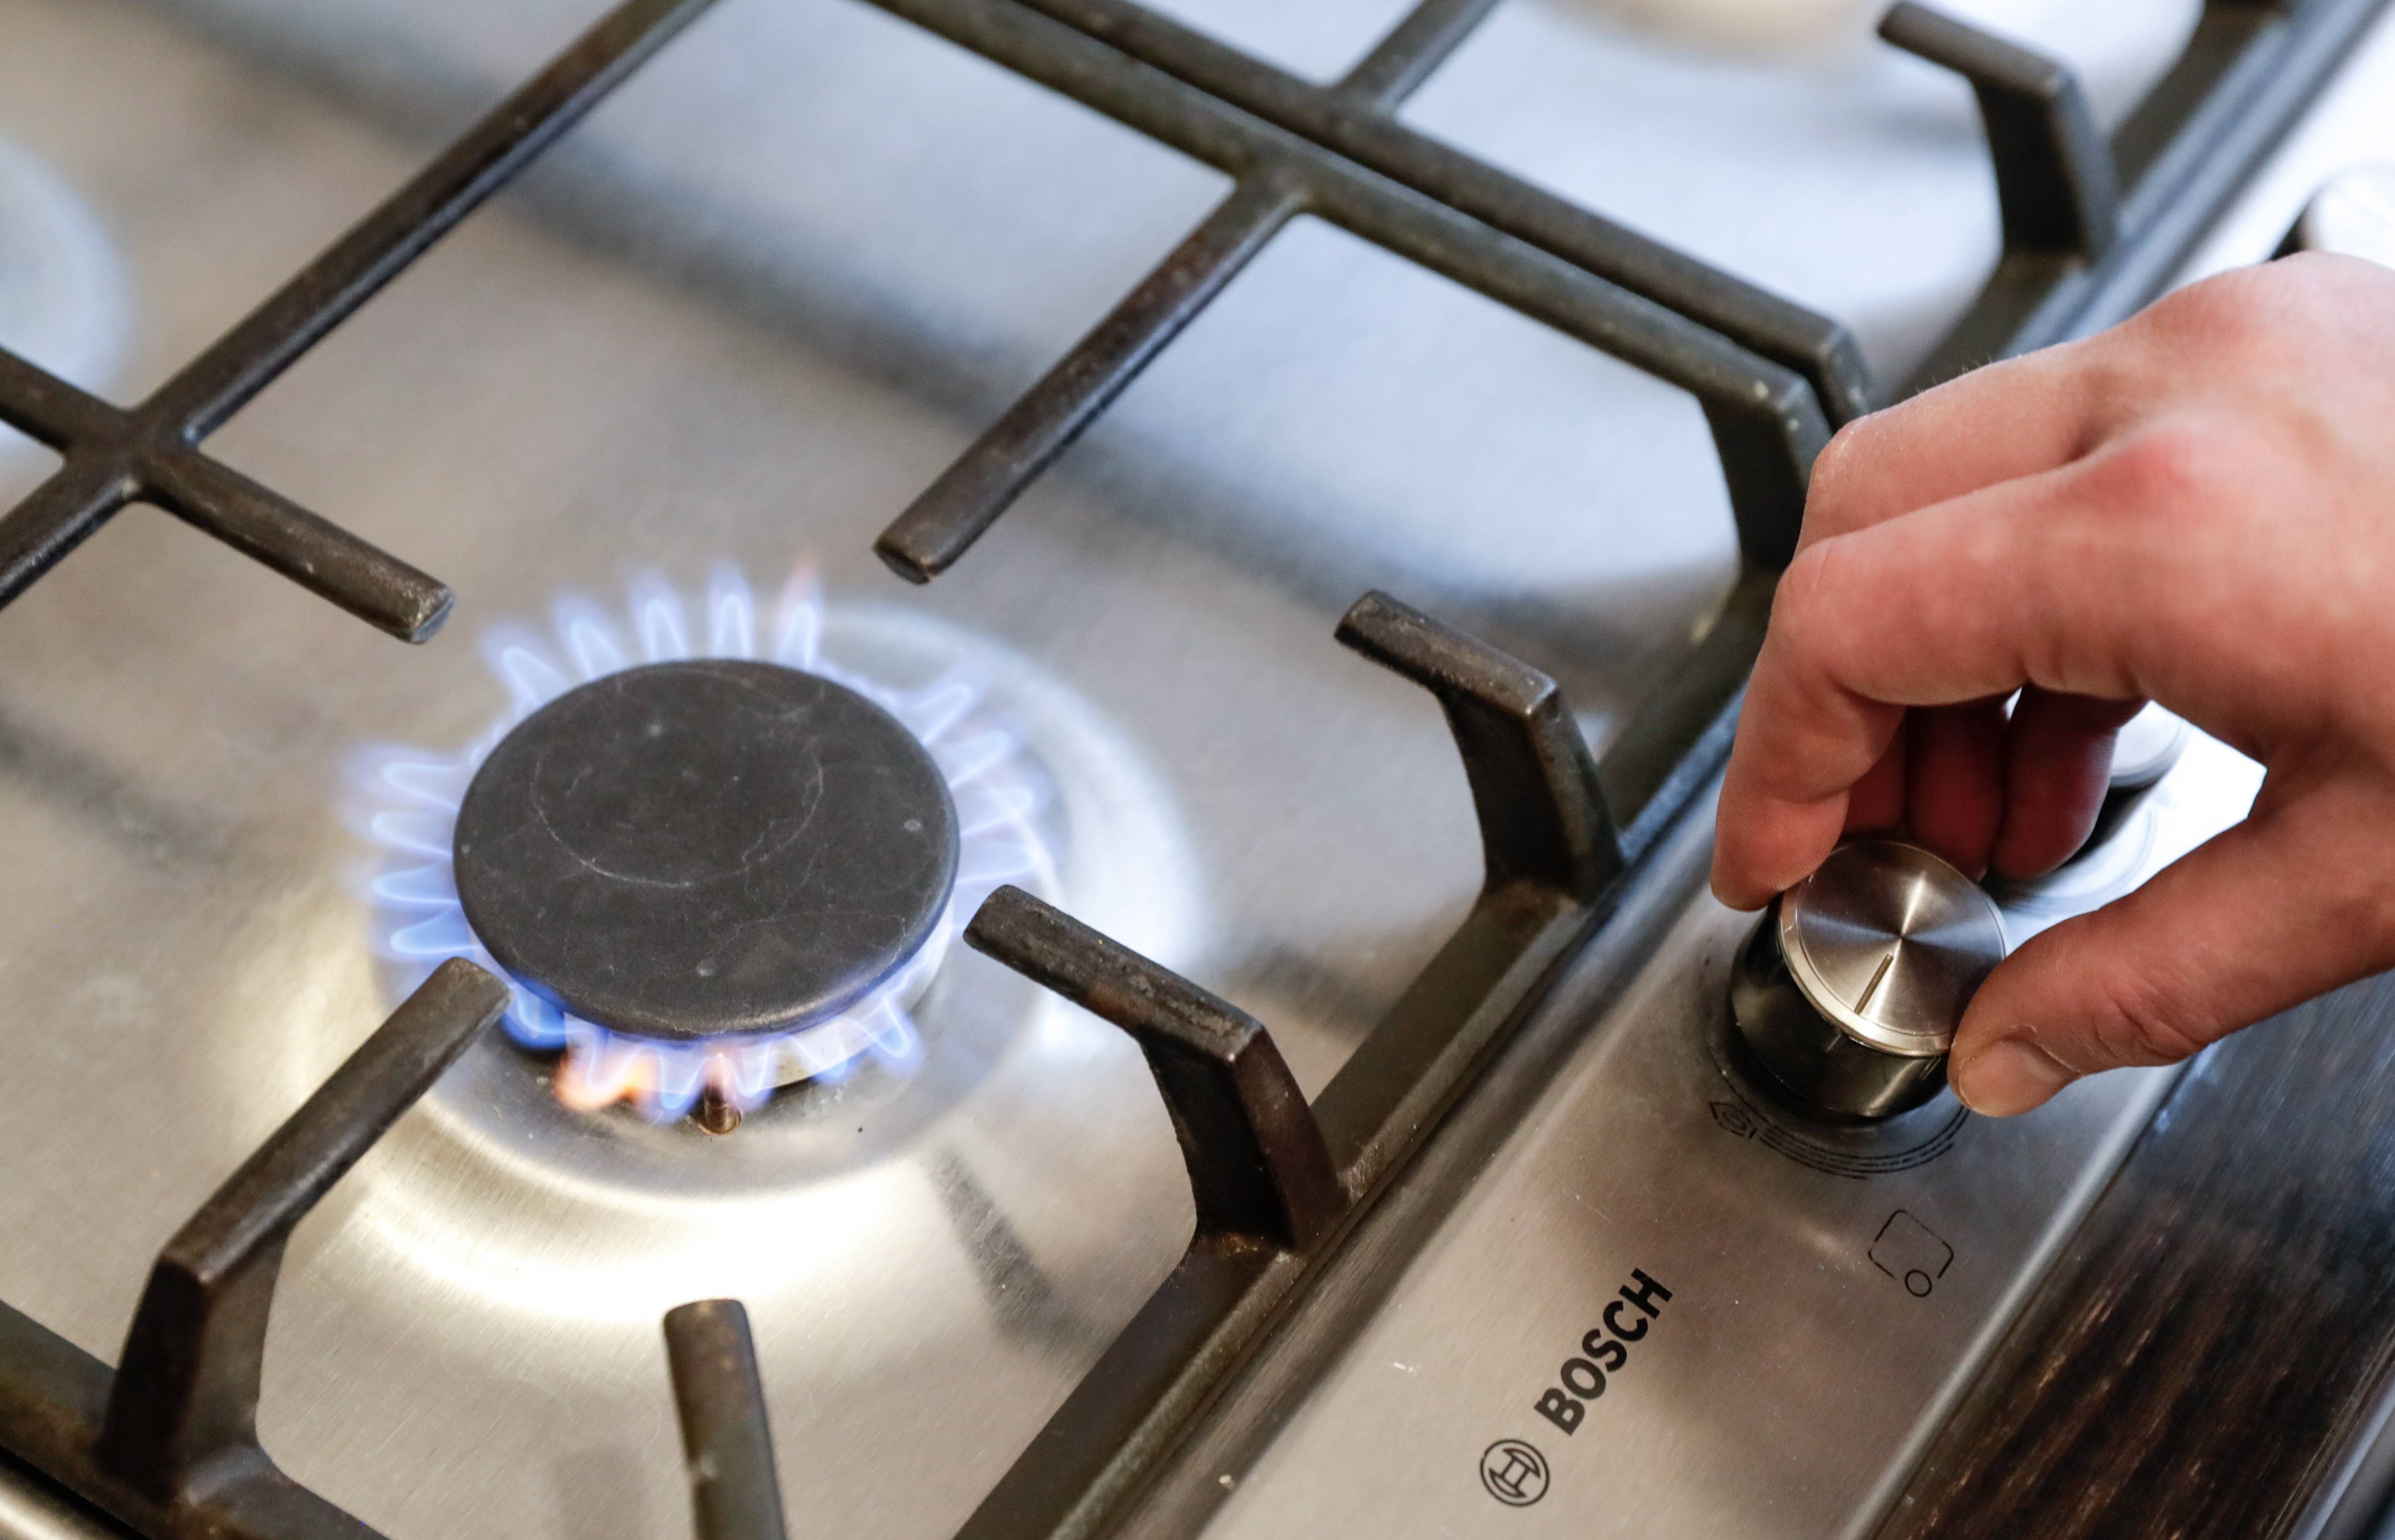 Потребление газа газовой плиты: норма в час, правила определения расхода и рекомендации по экономии